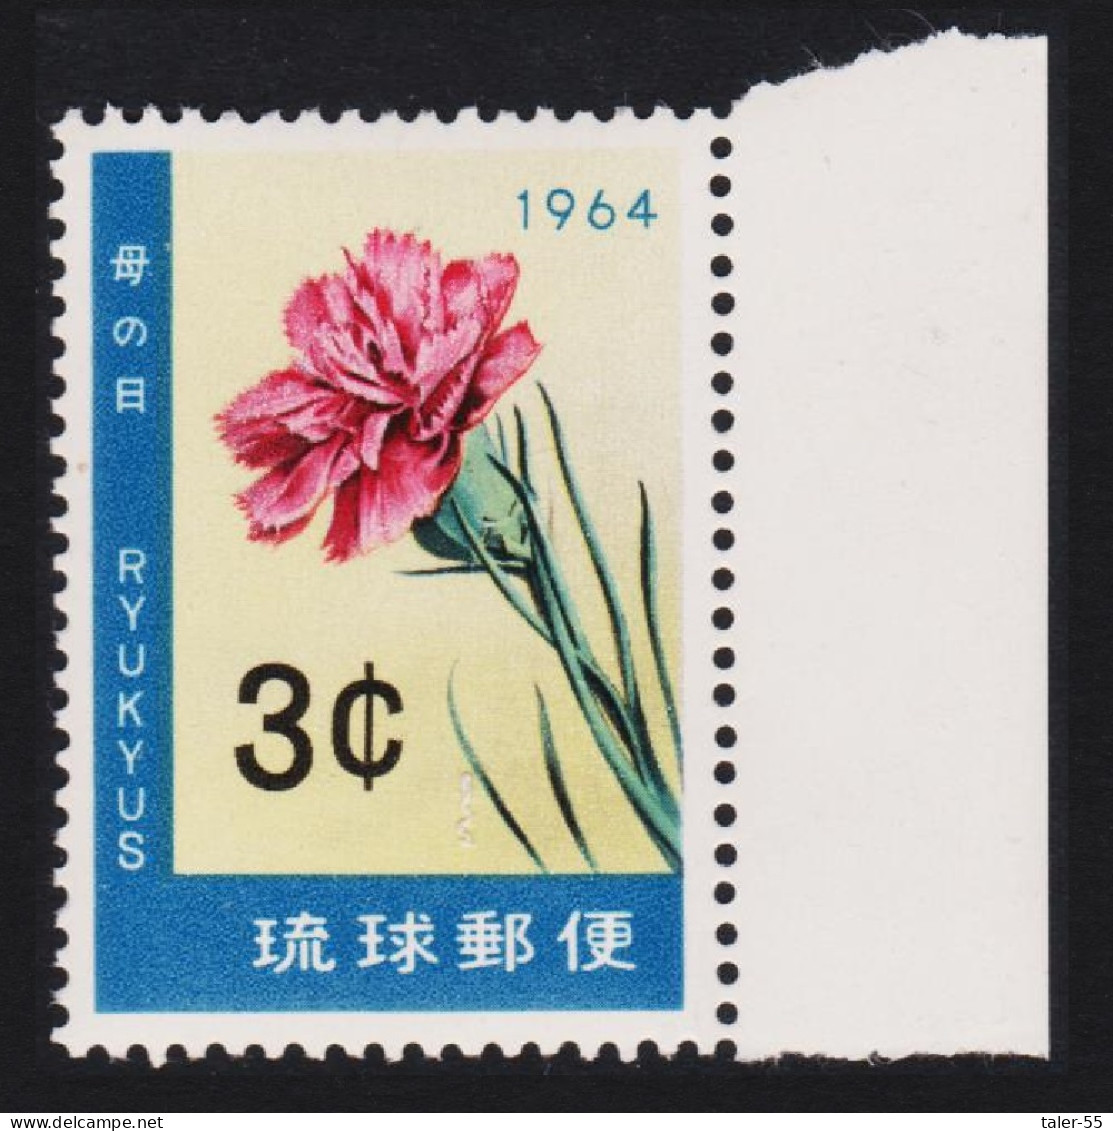 Ryukyu Carnation Flower Mothers' Day 1964 MNH SG#153 - Ryukyu Islands